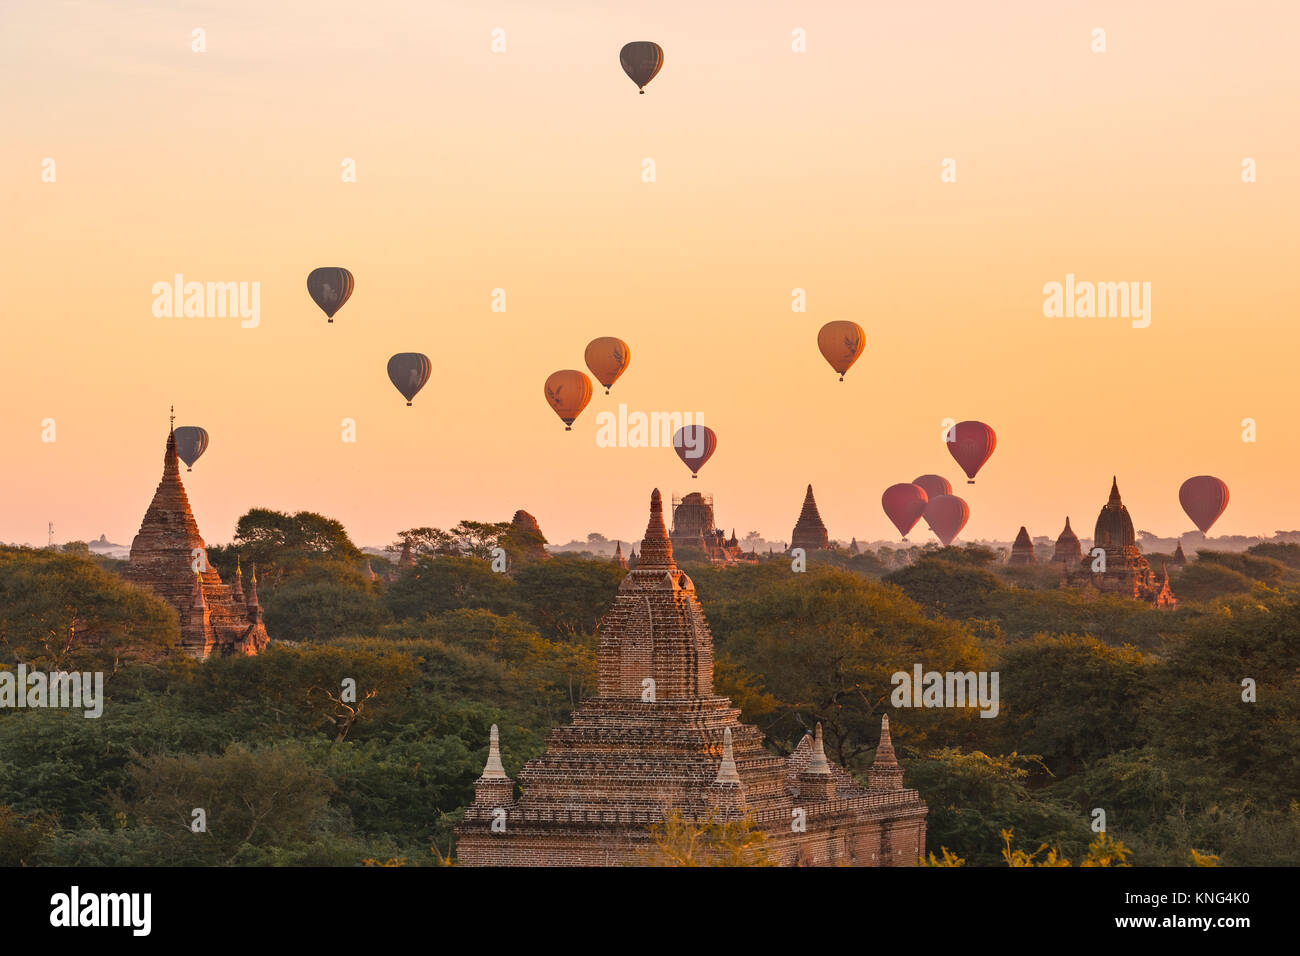 Bagan, Mandalay, Myanmar, Asia Stock Photo